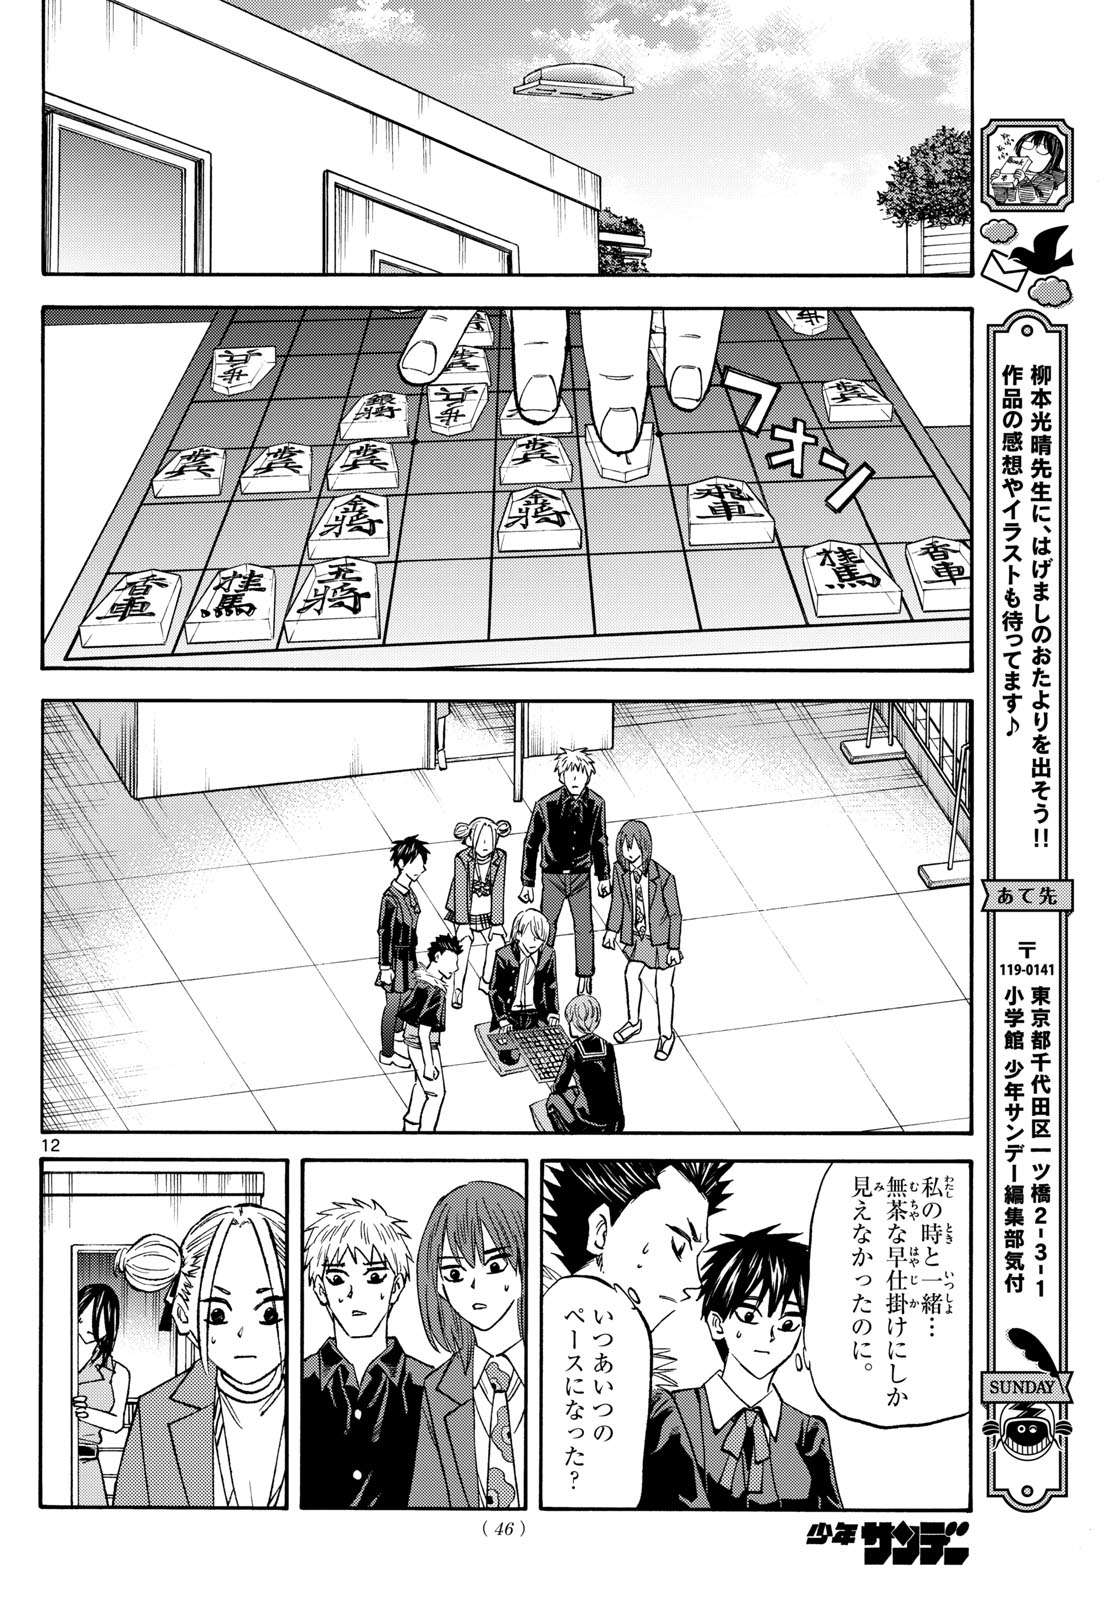 Tatsu to Ichigo - Chapter 187 - Page 12